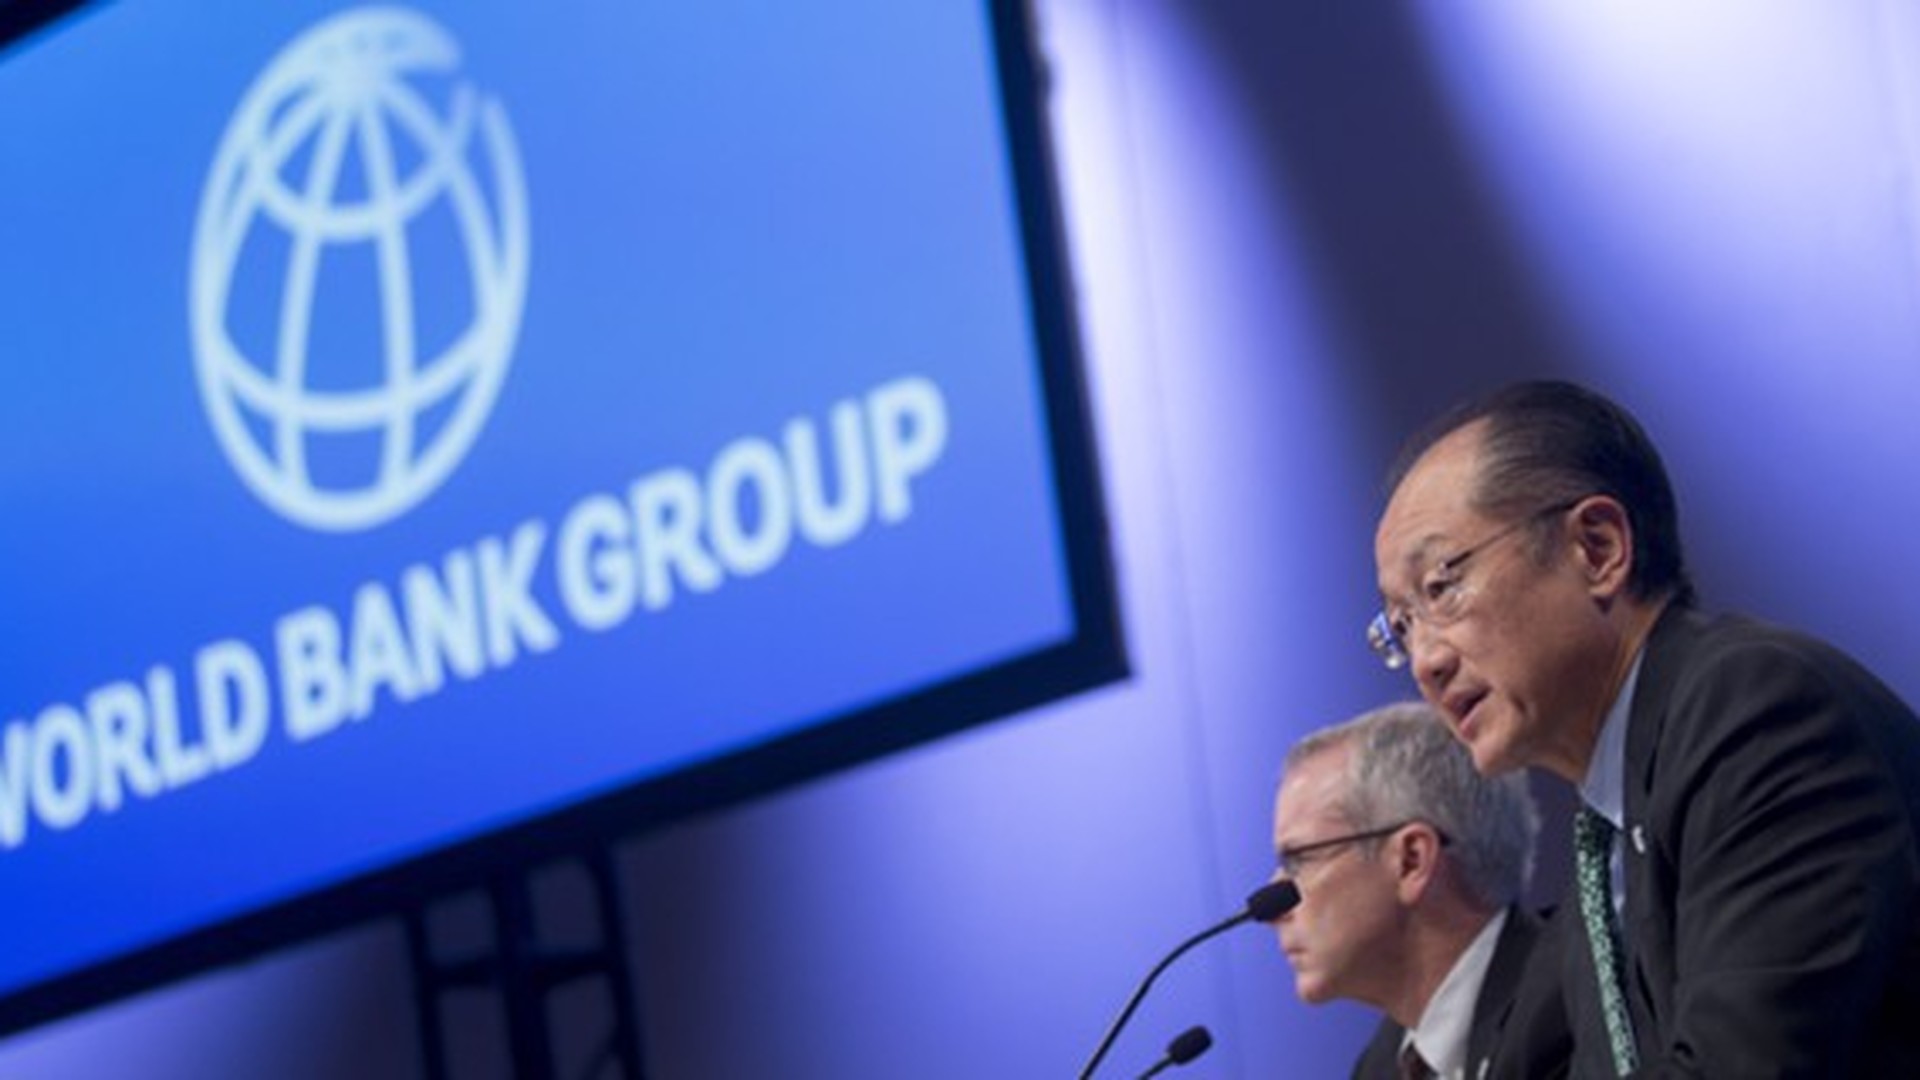 4 всемирный банк. Всемирный банк. Группа Всемирного банка фото. Группа Всемирного банка ООН. Флаг Всемирного банка.